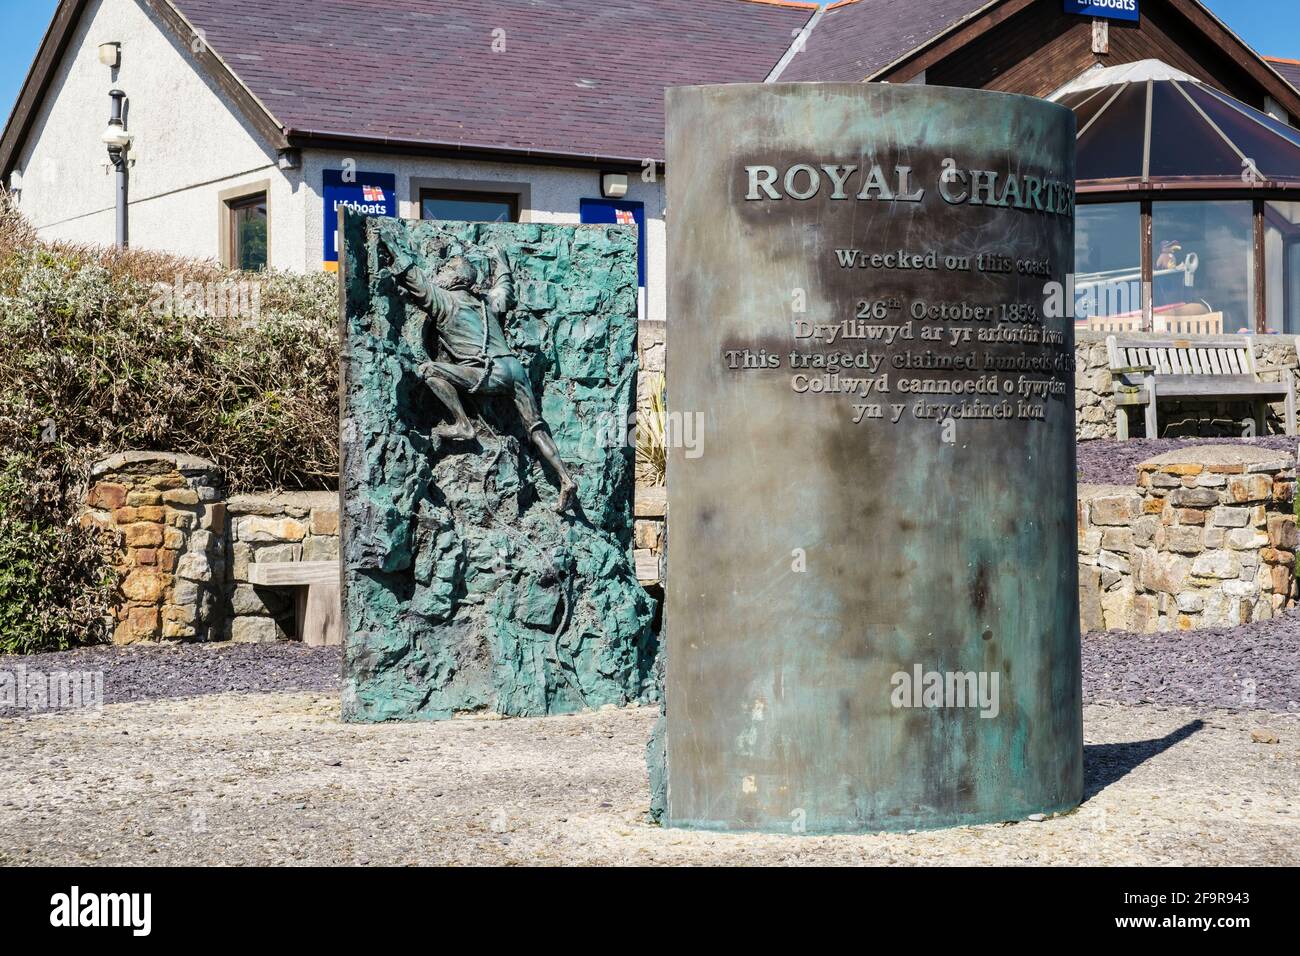 Royal Charter Shipwreck bronze Memorial sculptures à l'extérieur du centre d'accueil RNLI à Moelfre, île d'Anglesey, au nord du pays de Galles, Royaume-Uni, Grande-Bretagne Banque D'Images